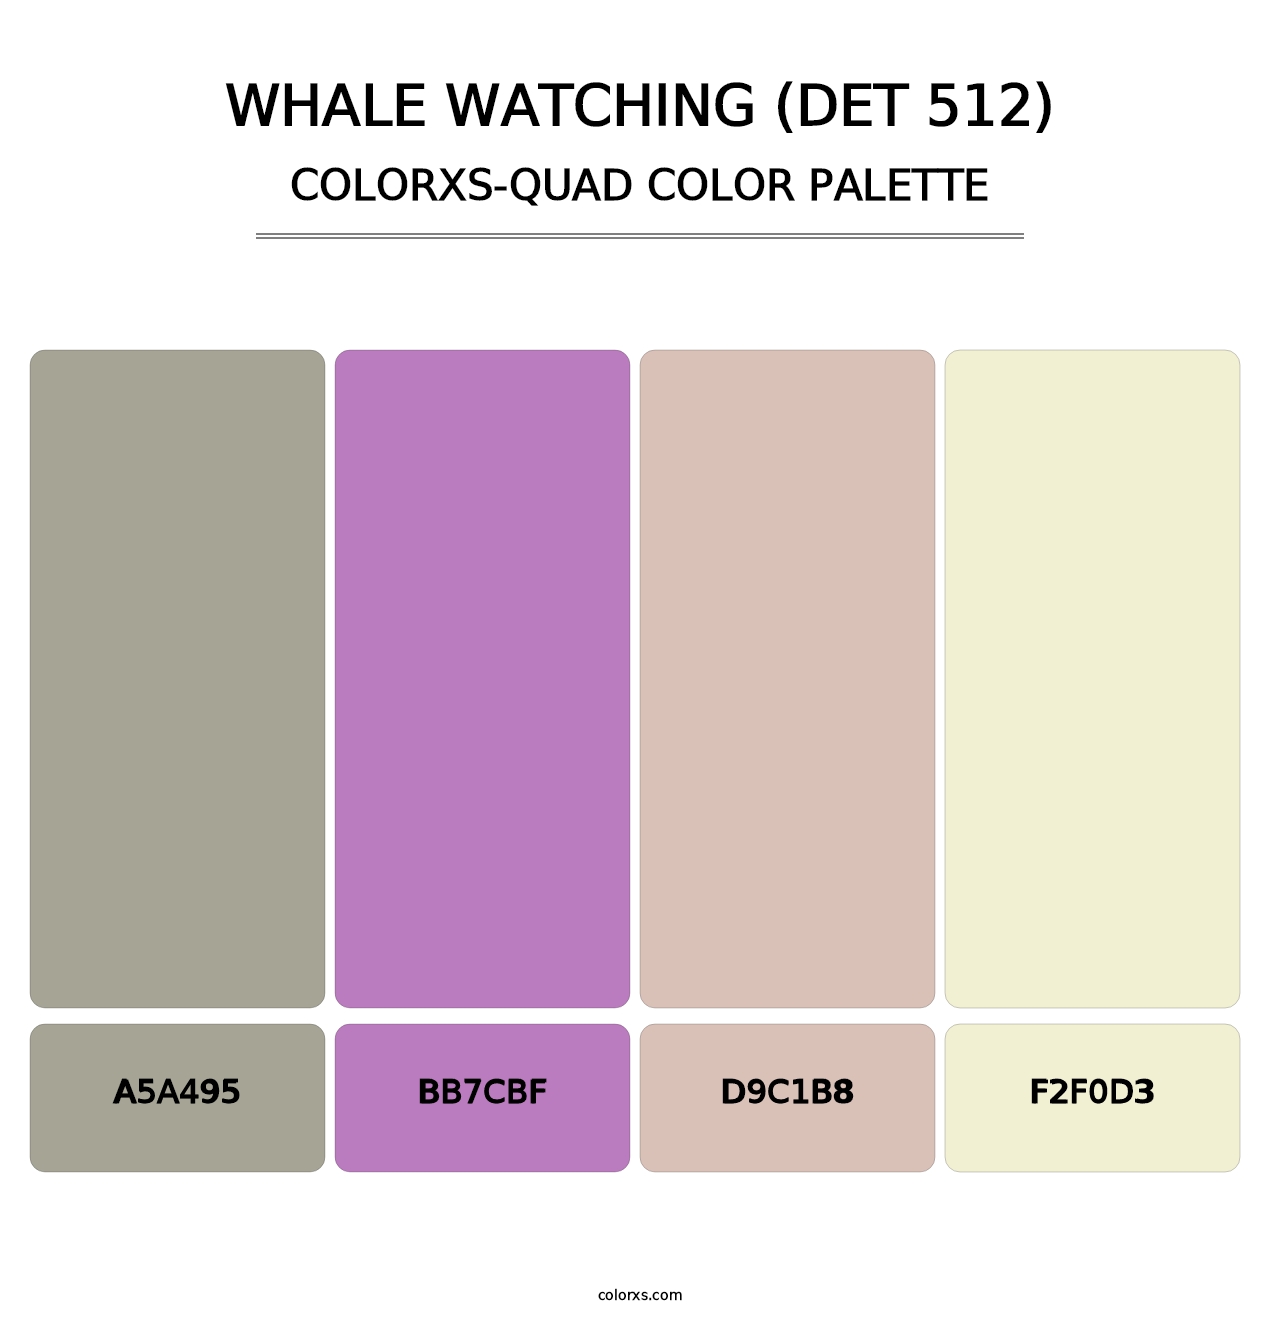 Whale Watching (DET 512) - Colorxs Quad Palette